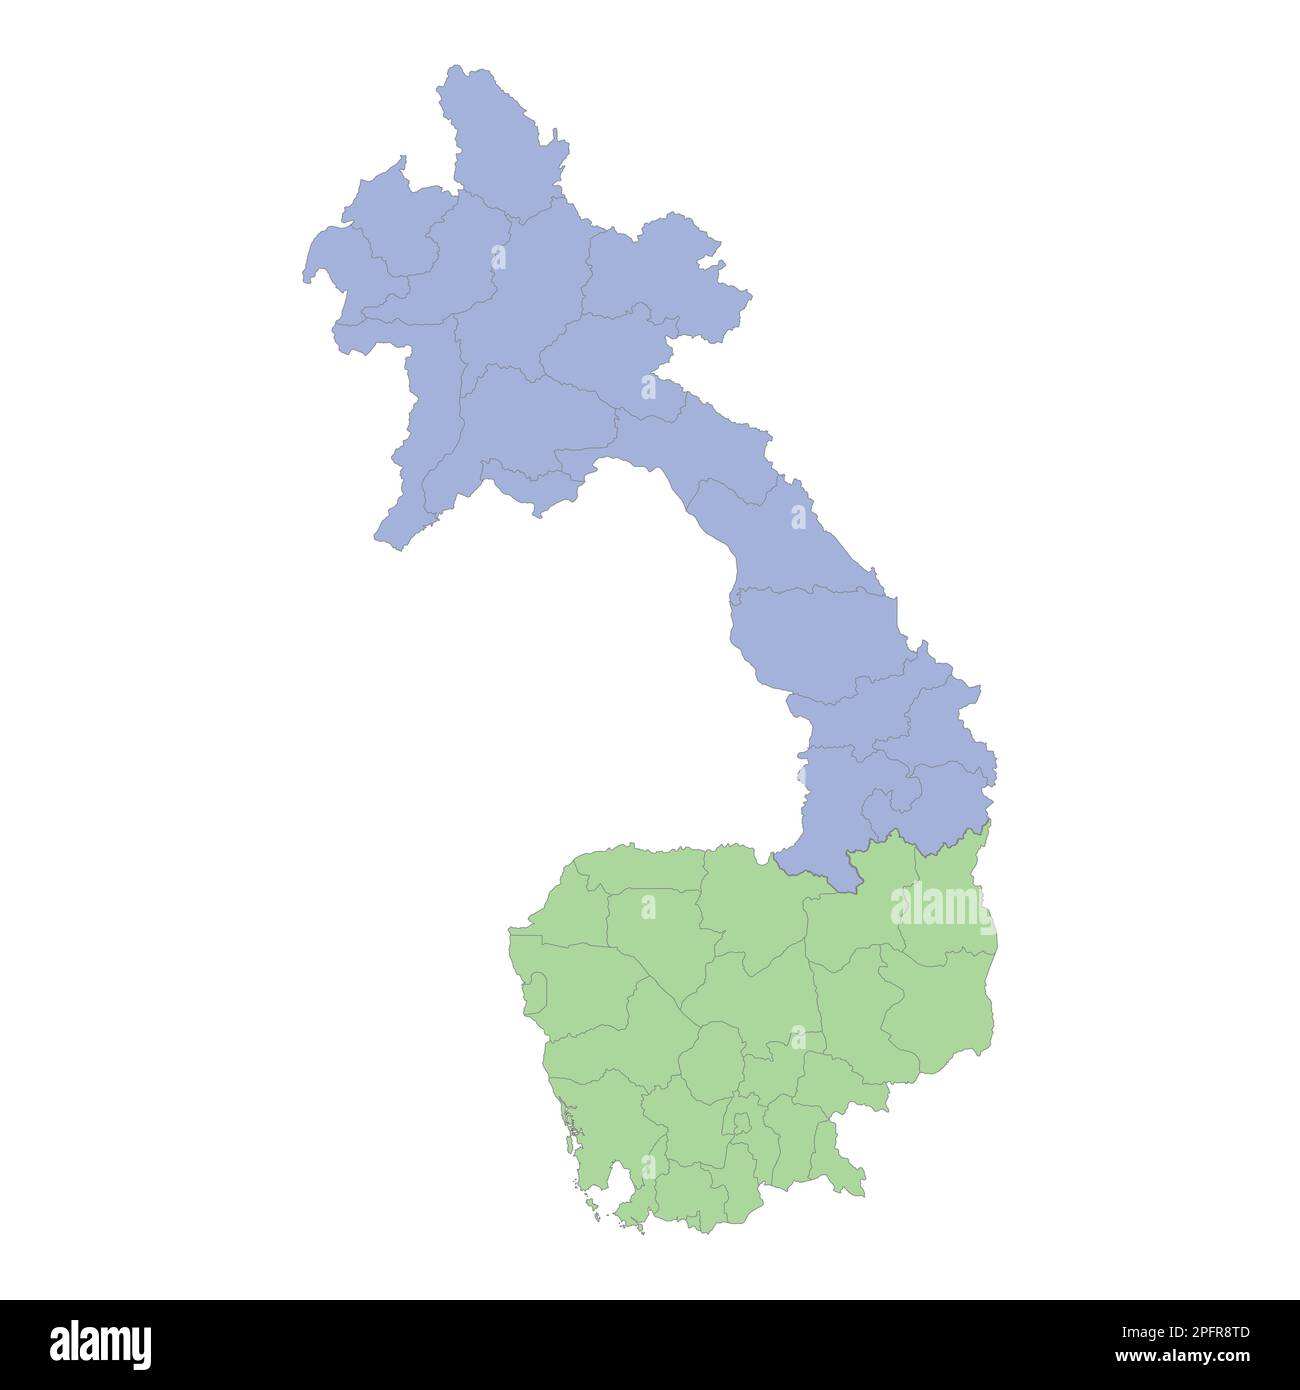 Mappa politica di alta qualità della Cambogia e del Laos con i confini delle regioni o province. Illustrazione vettoriale Illustrazione Vettoriale